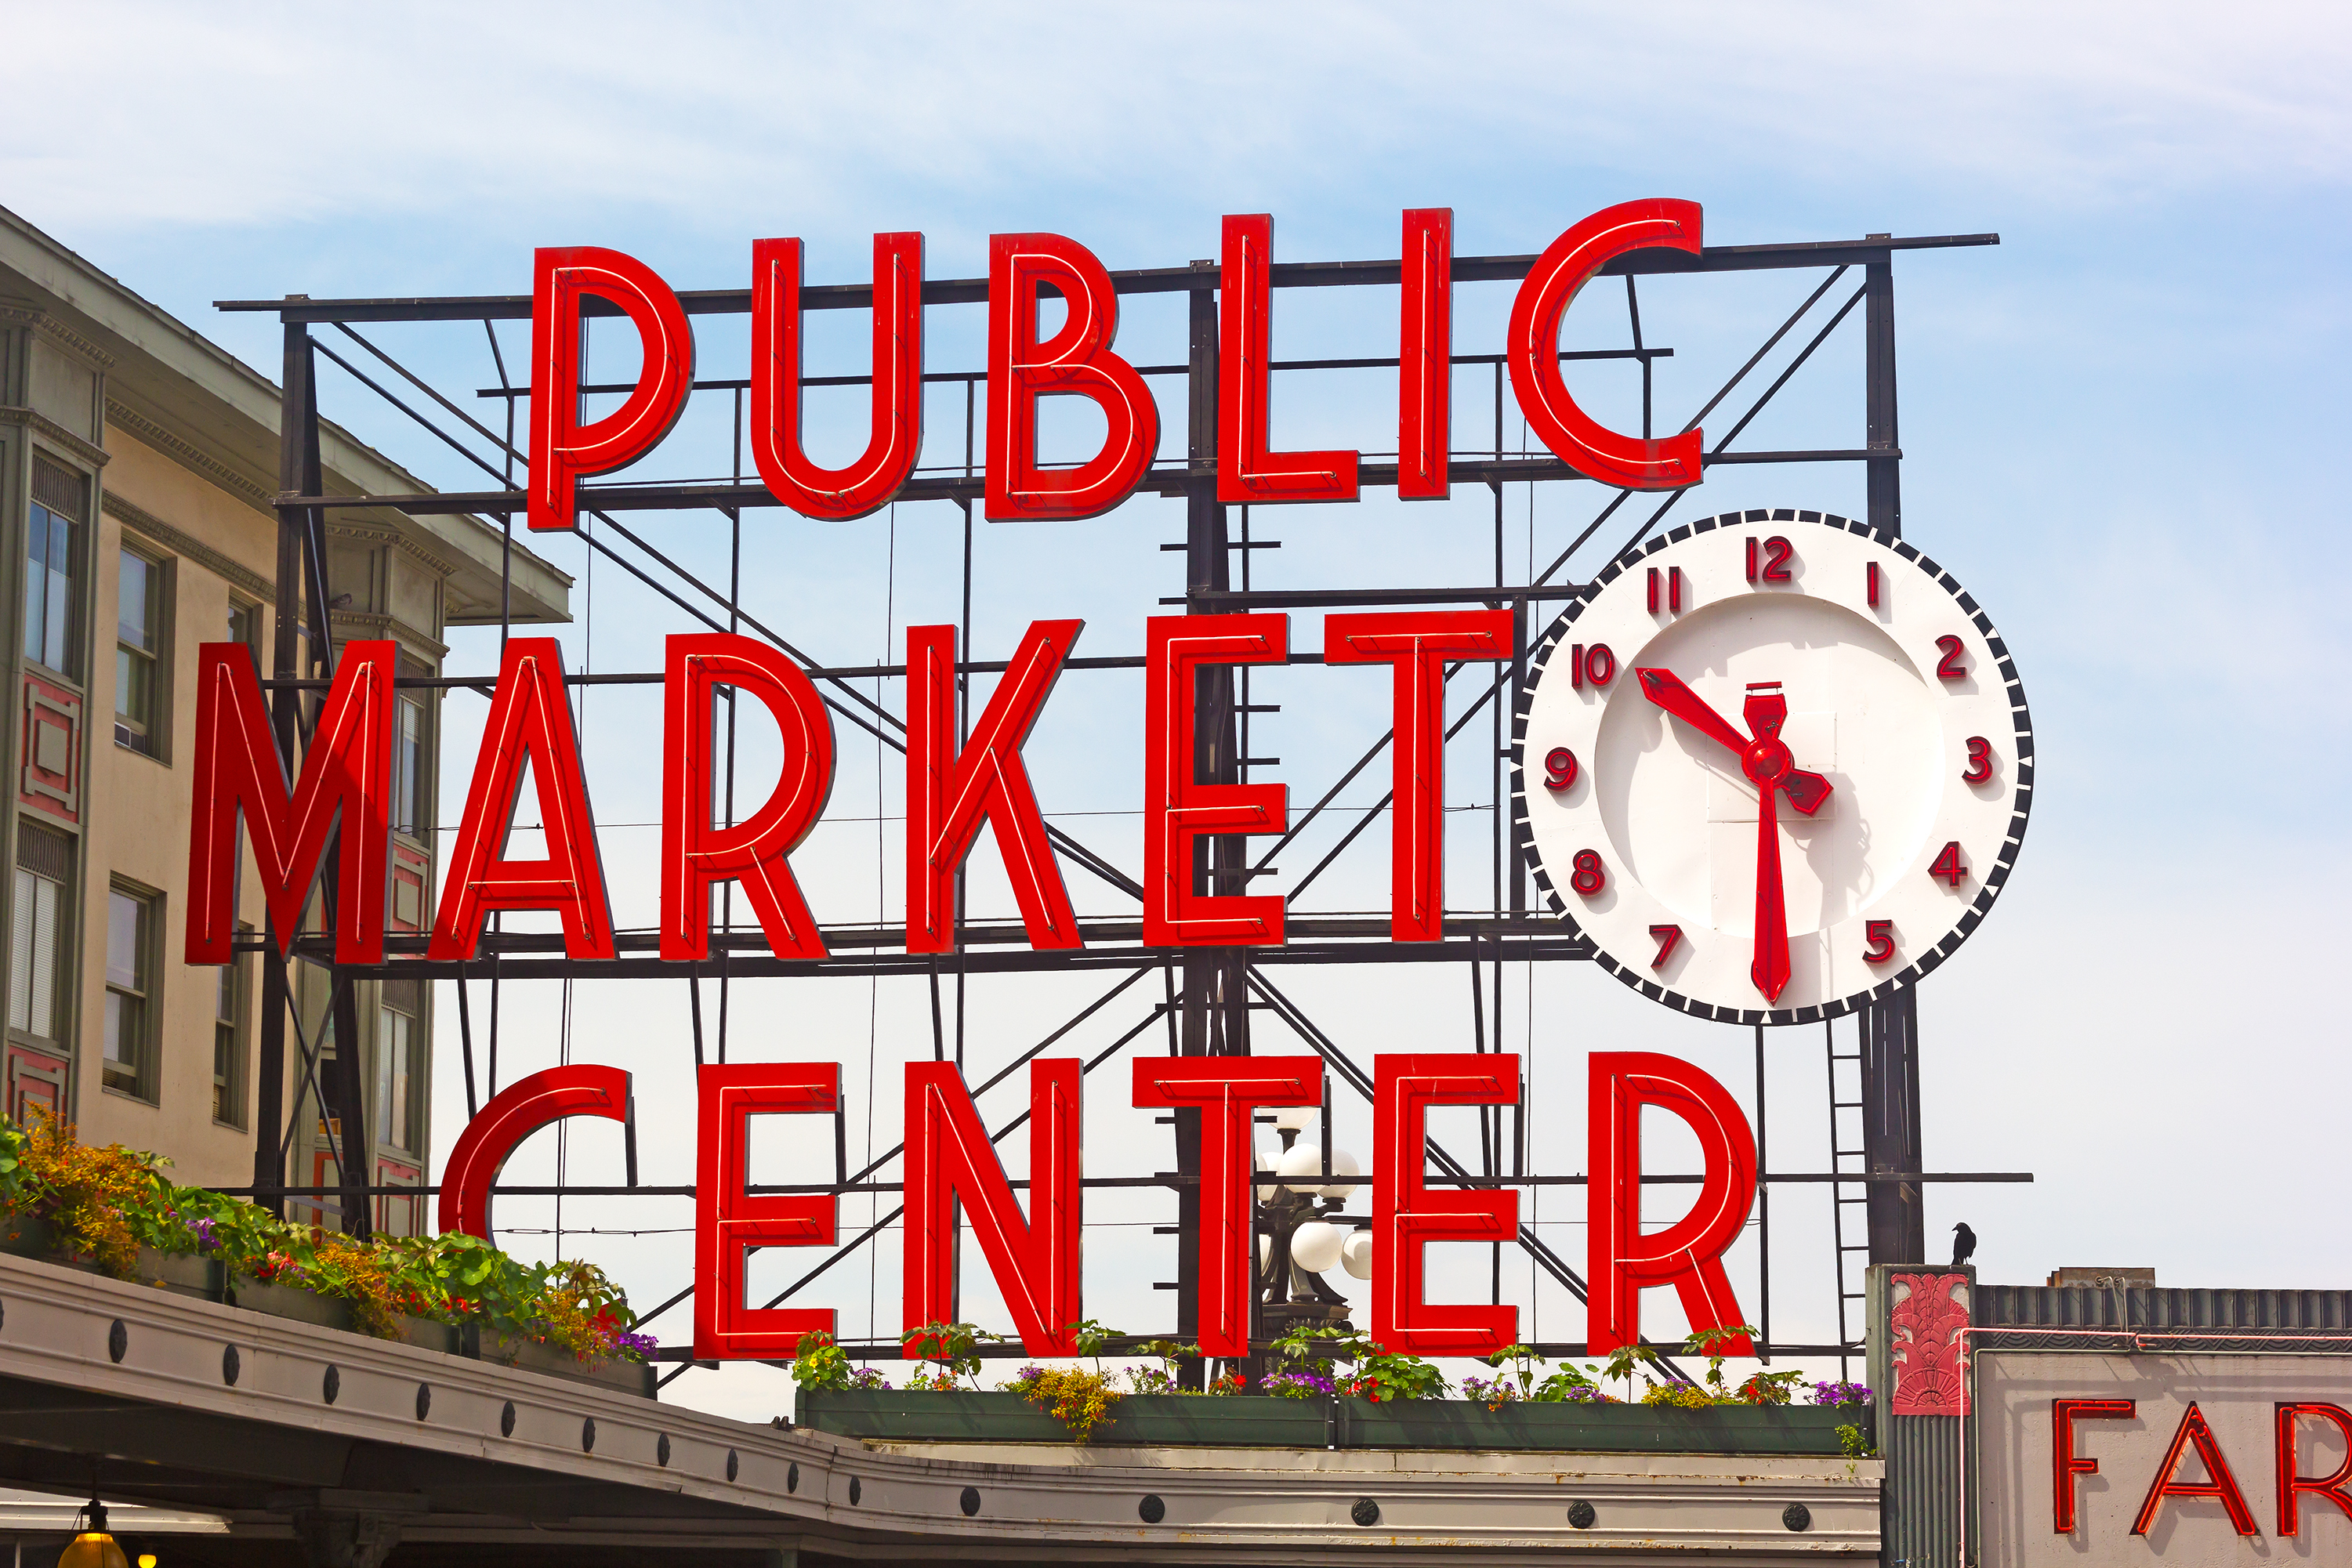 Public market center photo